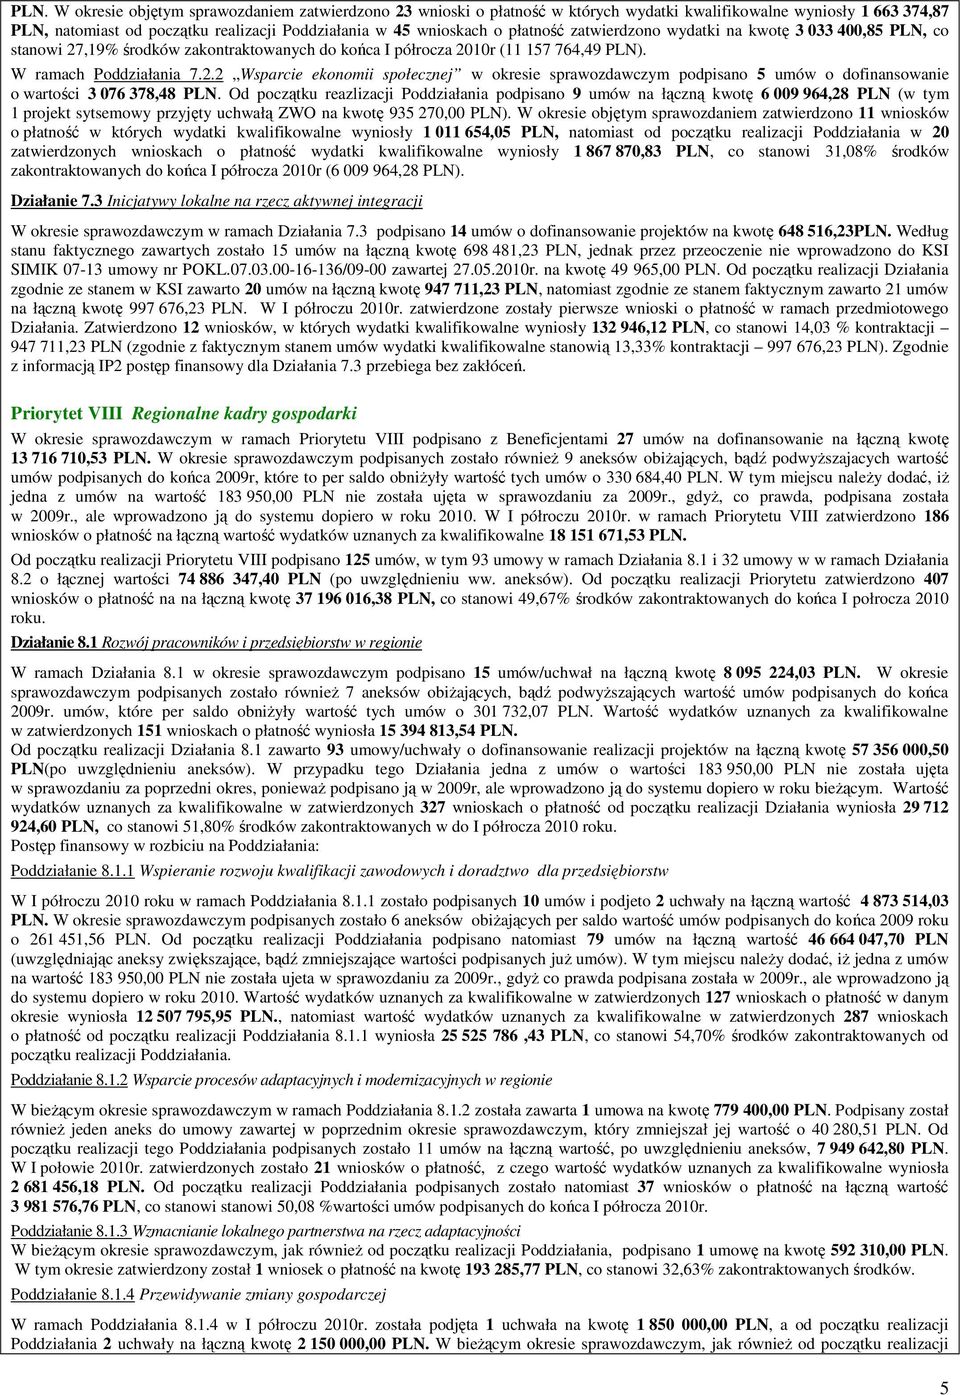 Od początku reazlizacji Poddziałania podpisano 9 umów na łączną kwotę 6 009 964,28 PLN (w tym 1 projekt sytsemowy przyjęty uchwałą ZWO na kwotę 935 270,00 PLN).